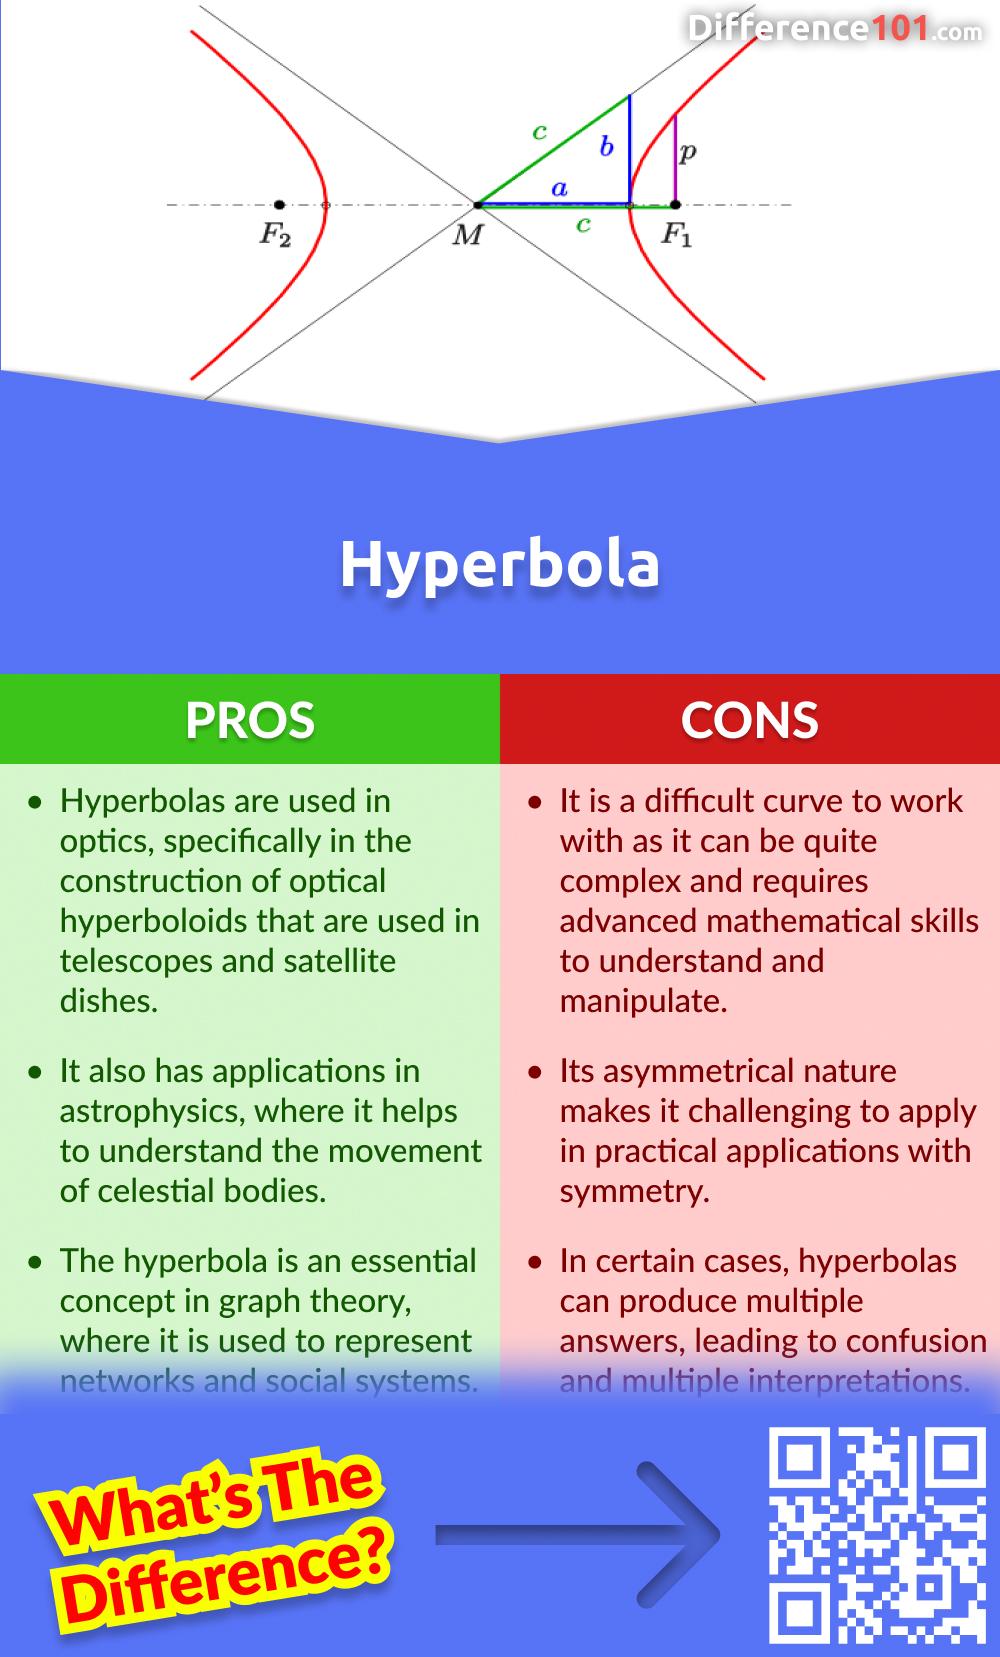 Hyperbola Pros & Cons